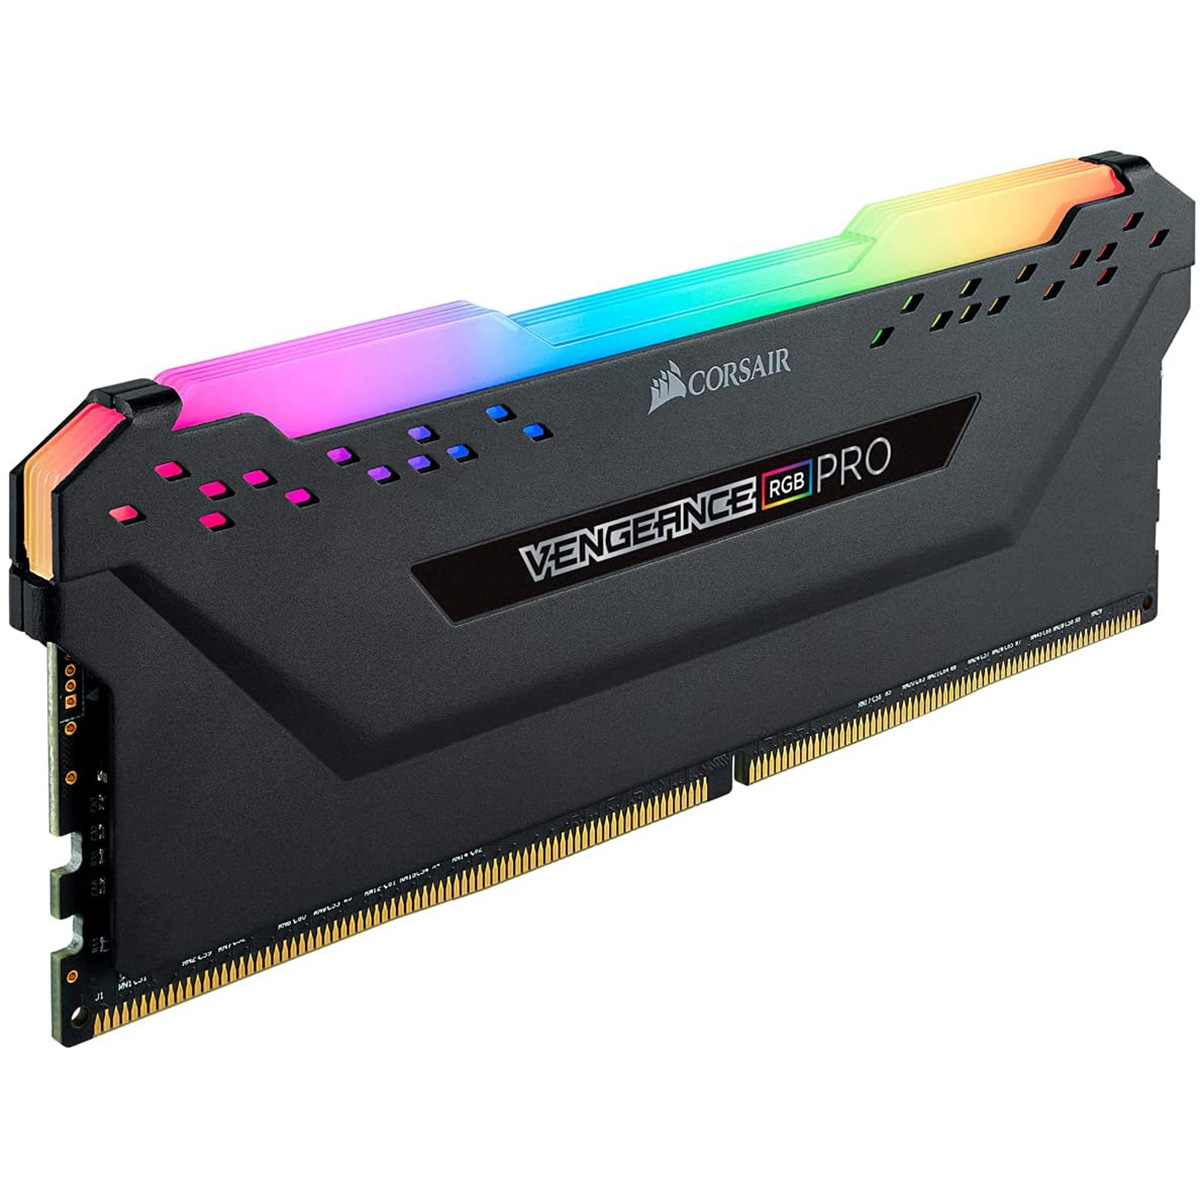 内蔵メモリ DDR4 3600MHz 16GB 1x16GB DIMM Unbuffered 18-22-22-42 VENGEANCE RGB PRO 1.35V. for AMD